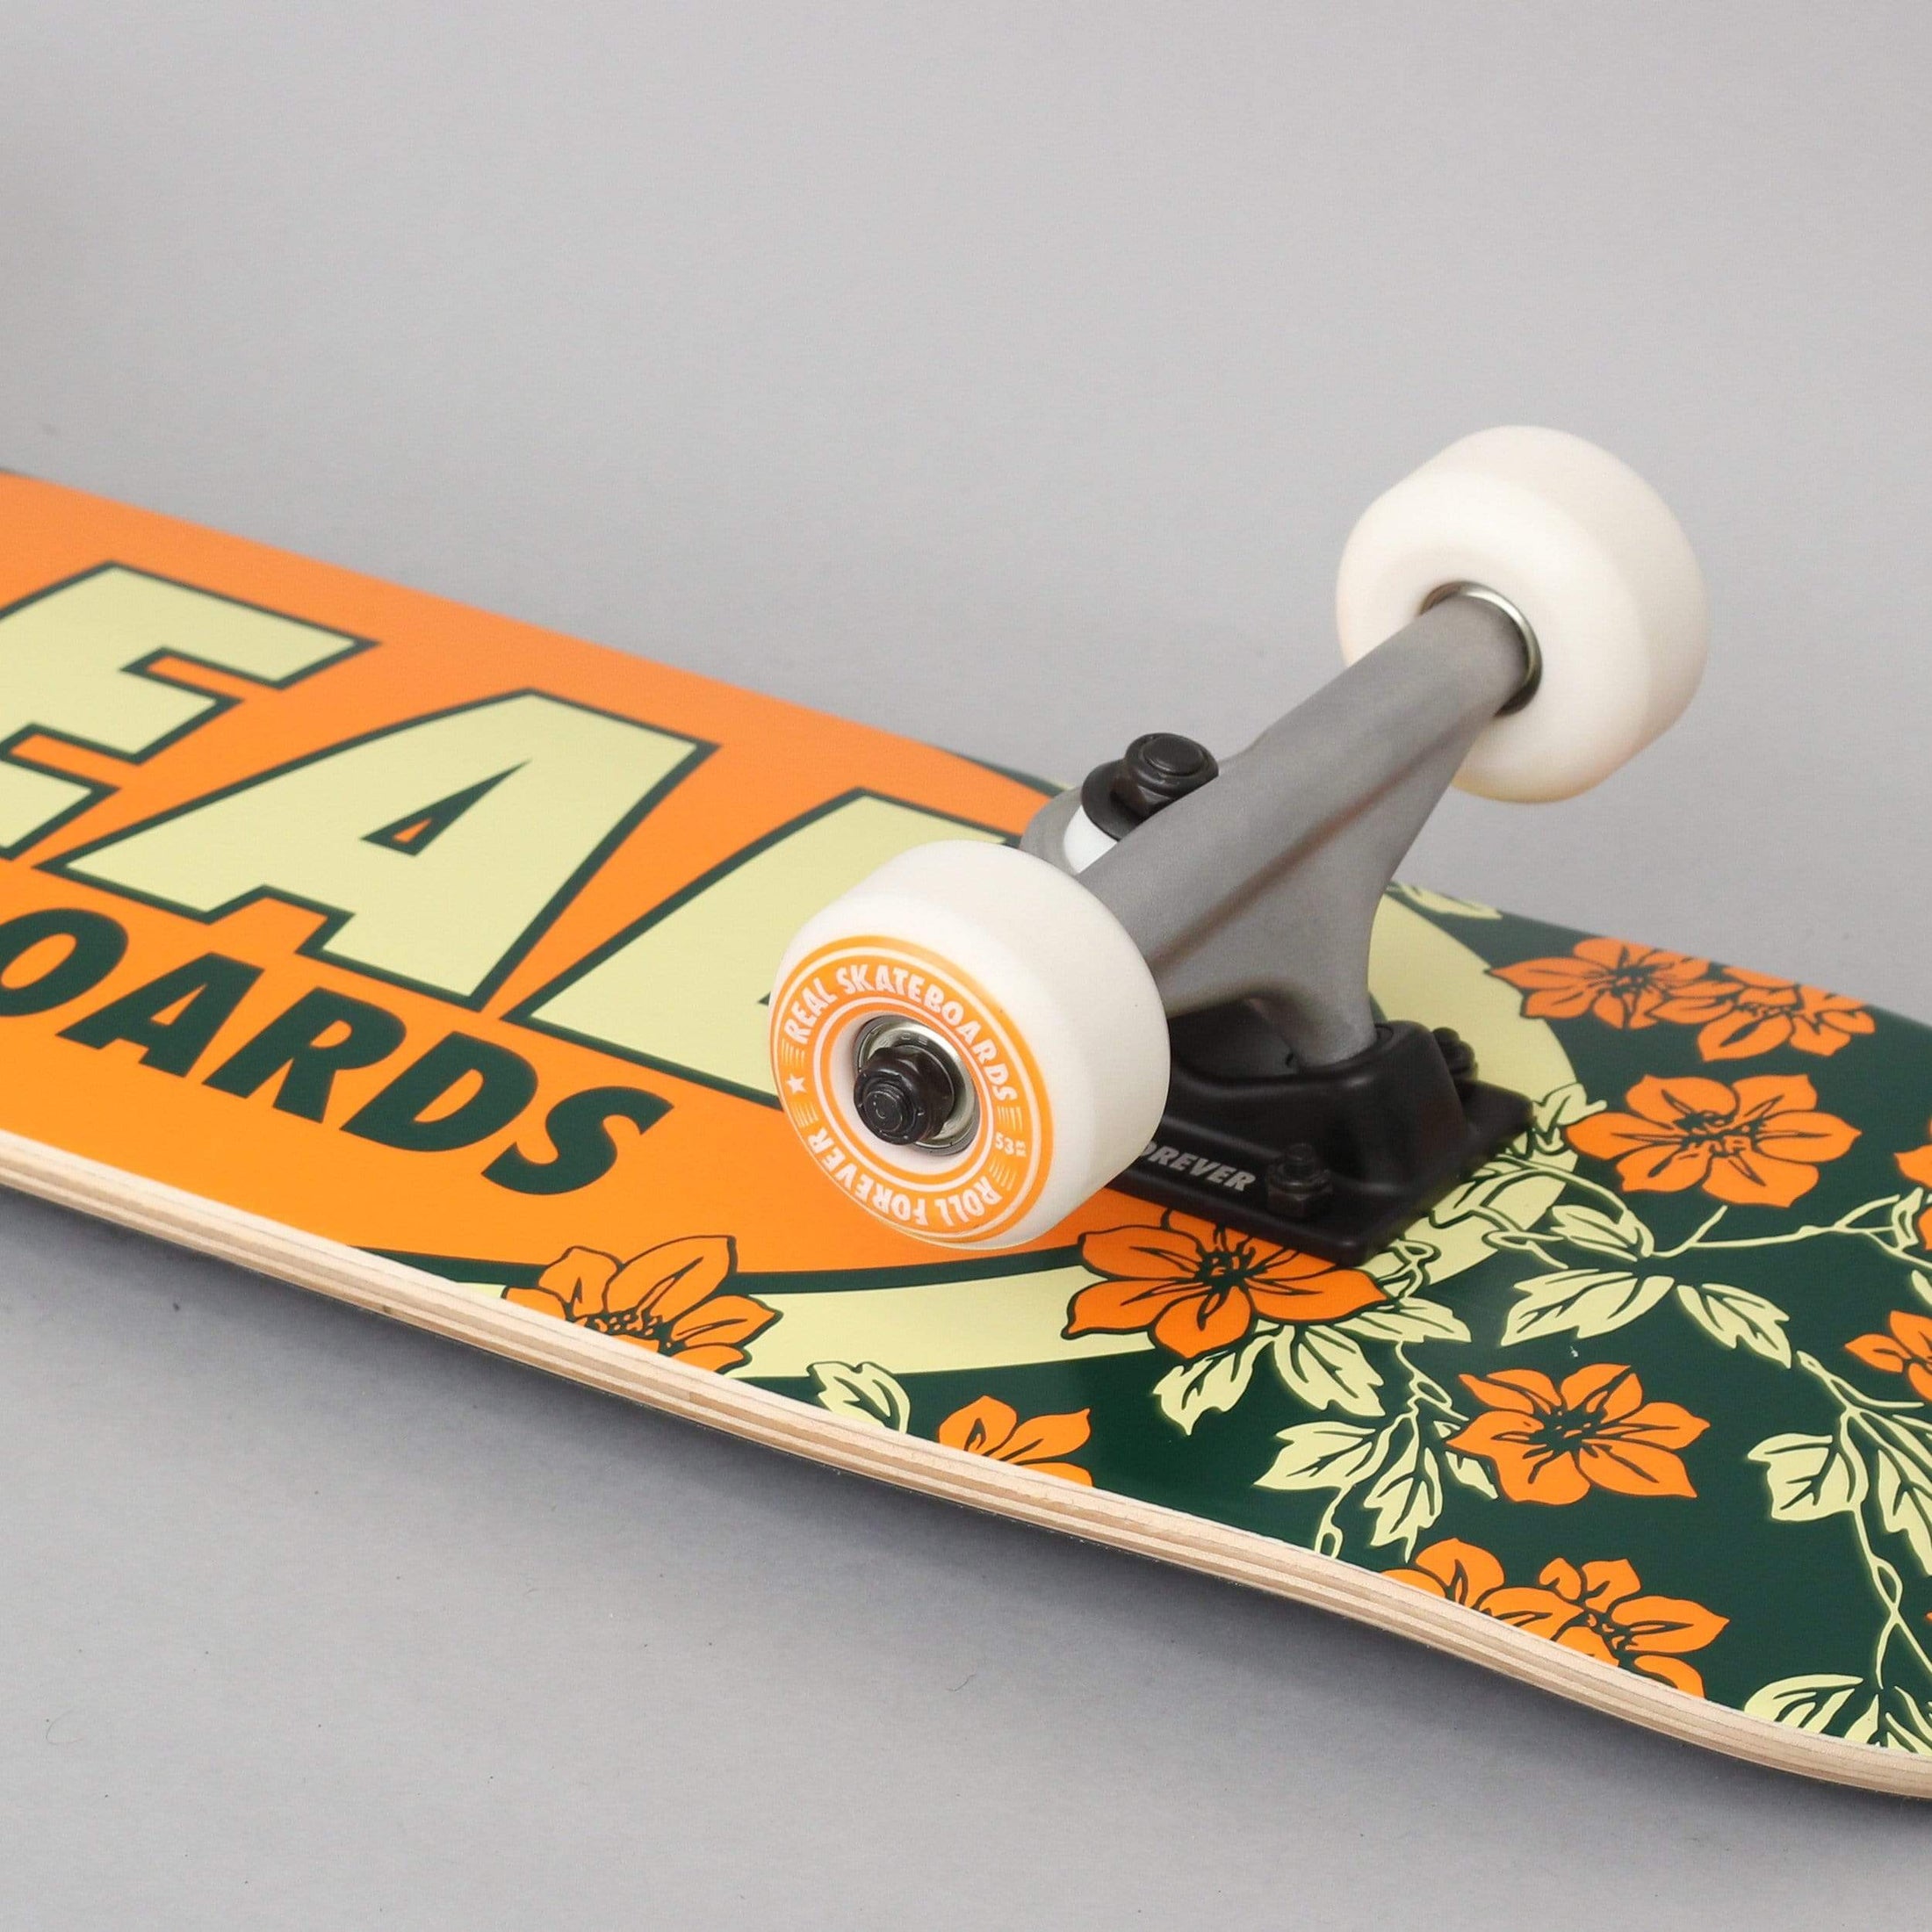 Real 7.3 Oval Blossoms Complete Skateboard Orange